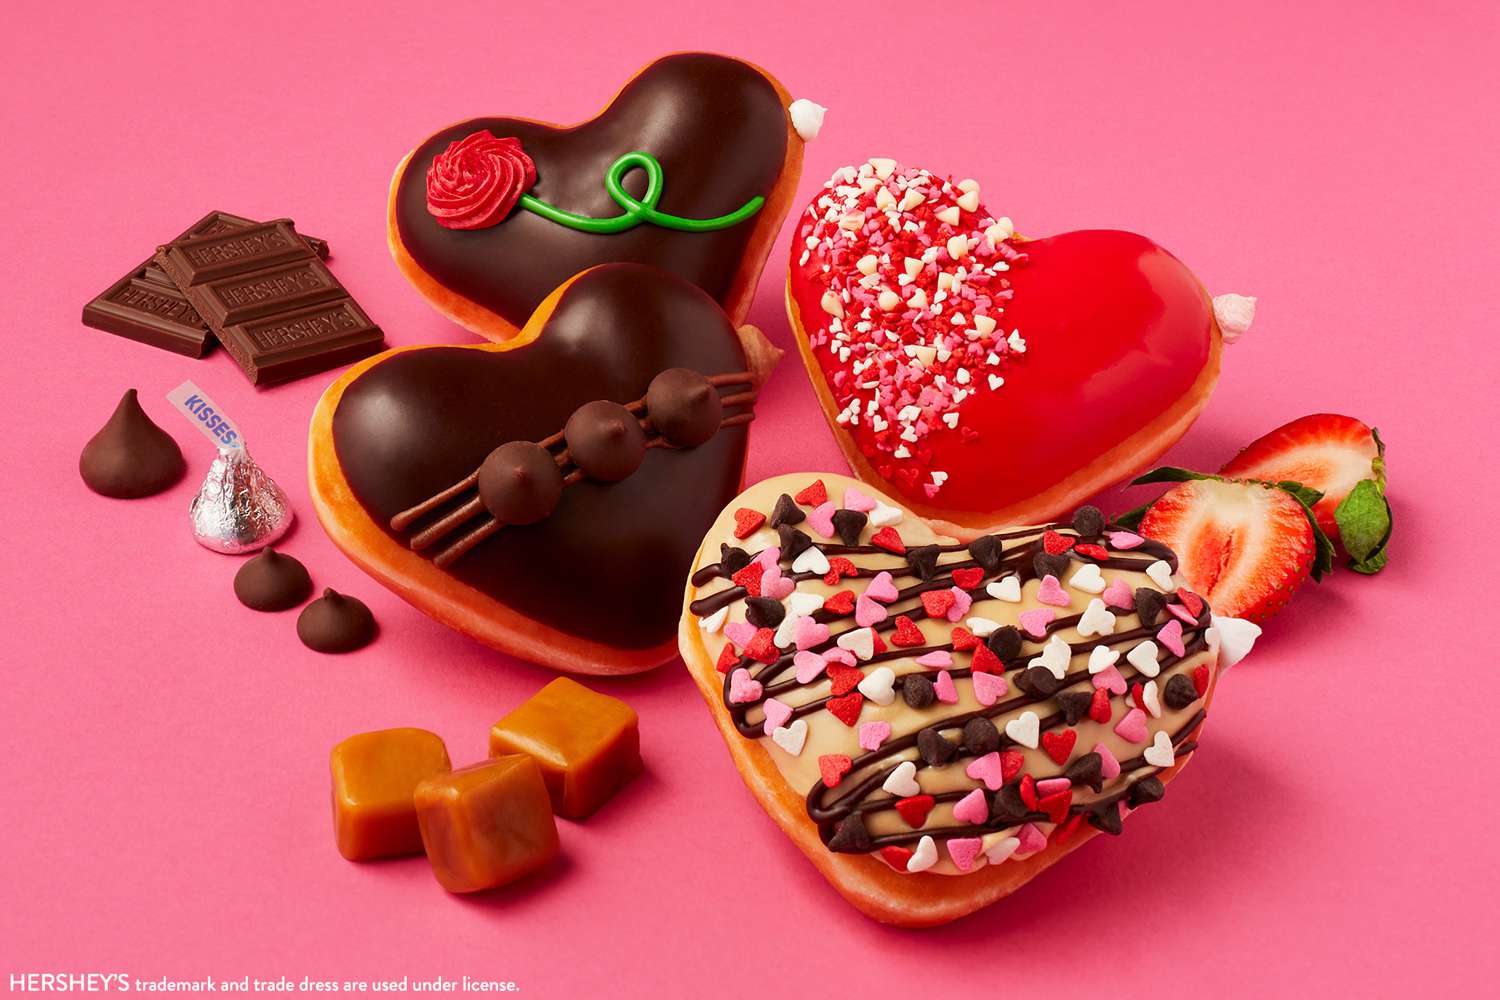 Krispy Kreme lanza donas en forma de corazón rellenas de chocolate Hershey's para el Día de San Valentín